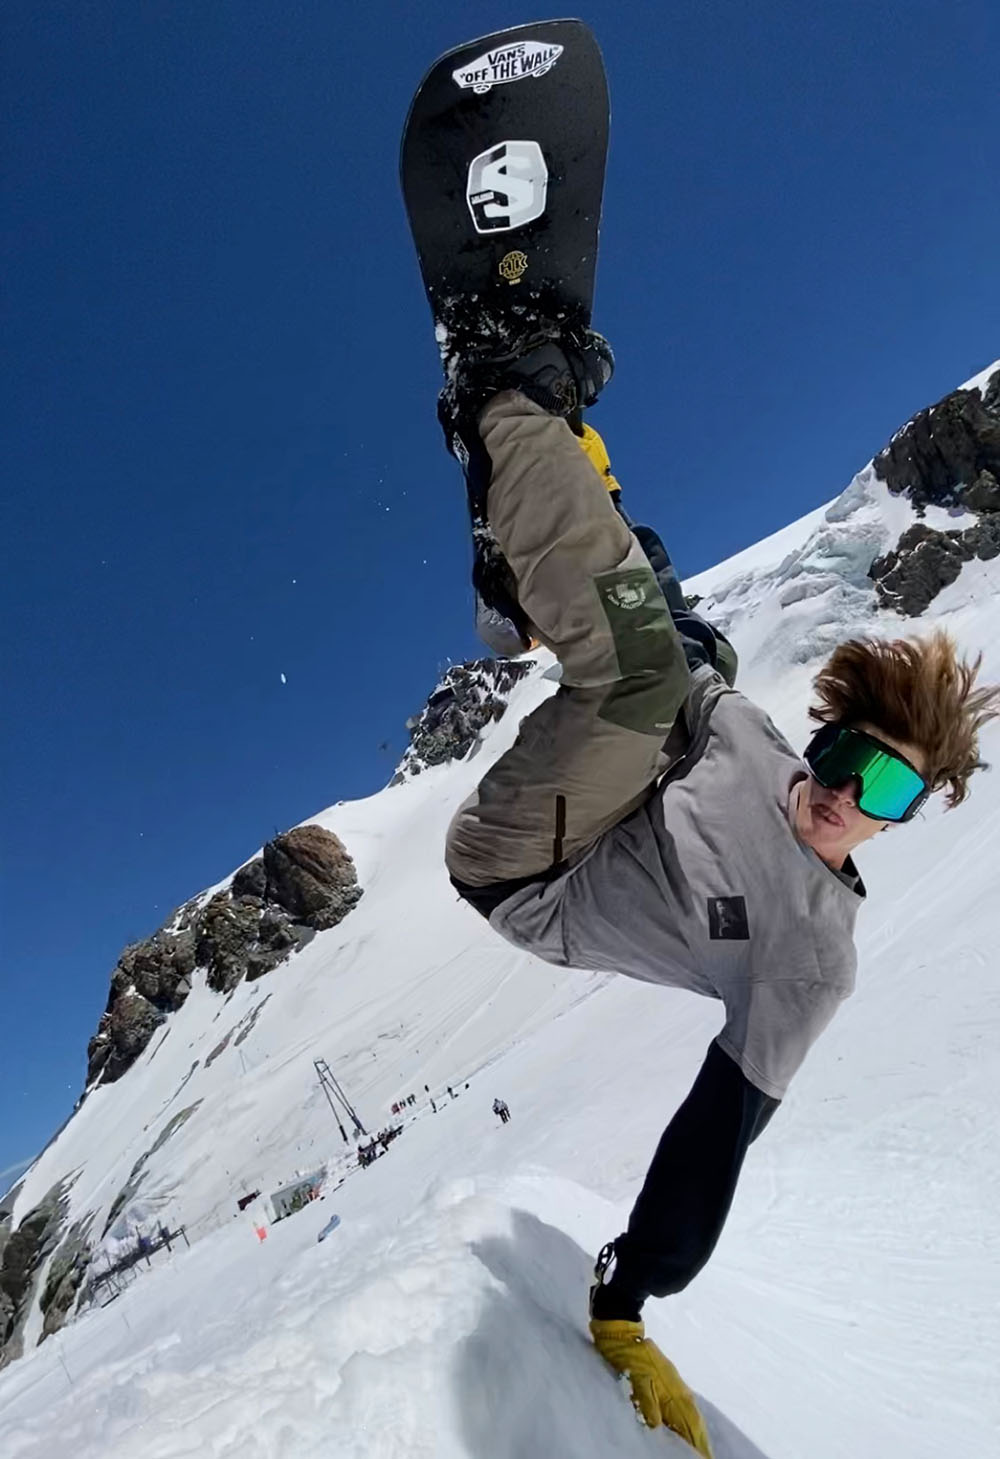 Philip Schwan hat sich als Snowboarder für die Winteruniversiade 2021 qualifiziert. Er studiert Sportwissenschaften an der Phil.-hum. Fakultät der Universität Bern.  © Universitätssport der Universität Bern